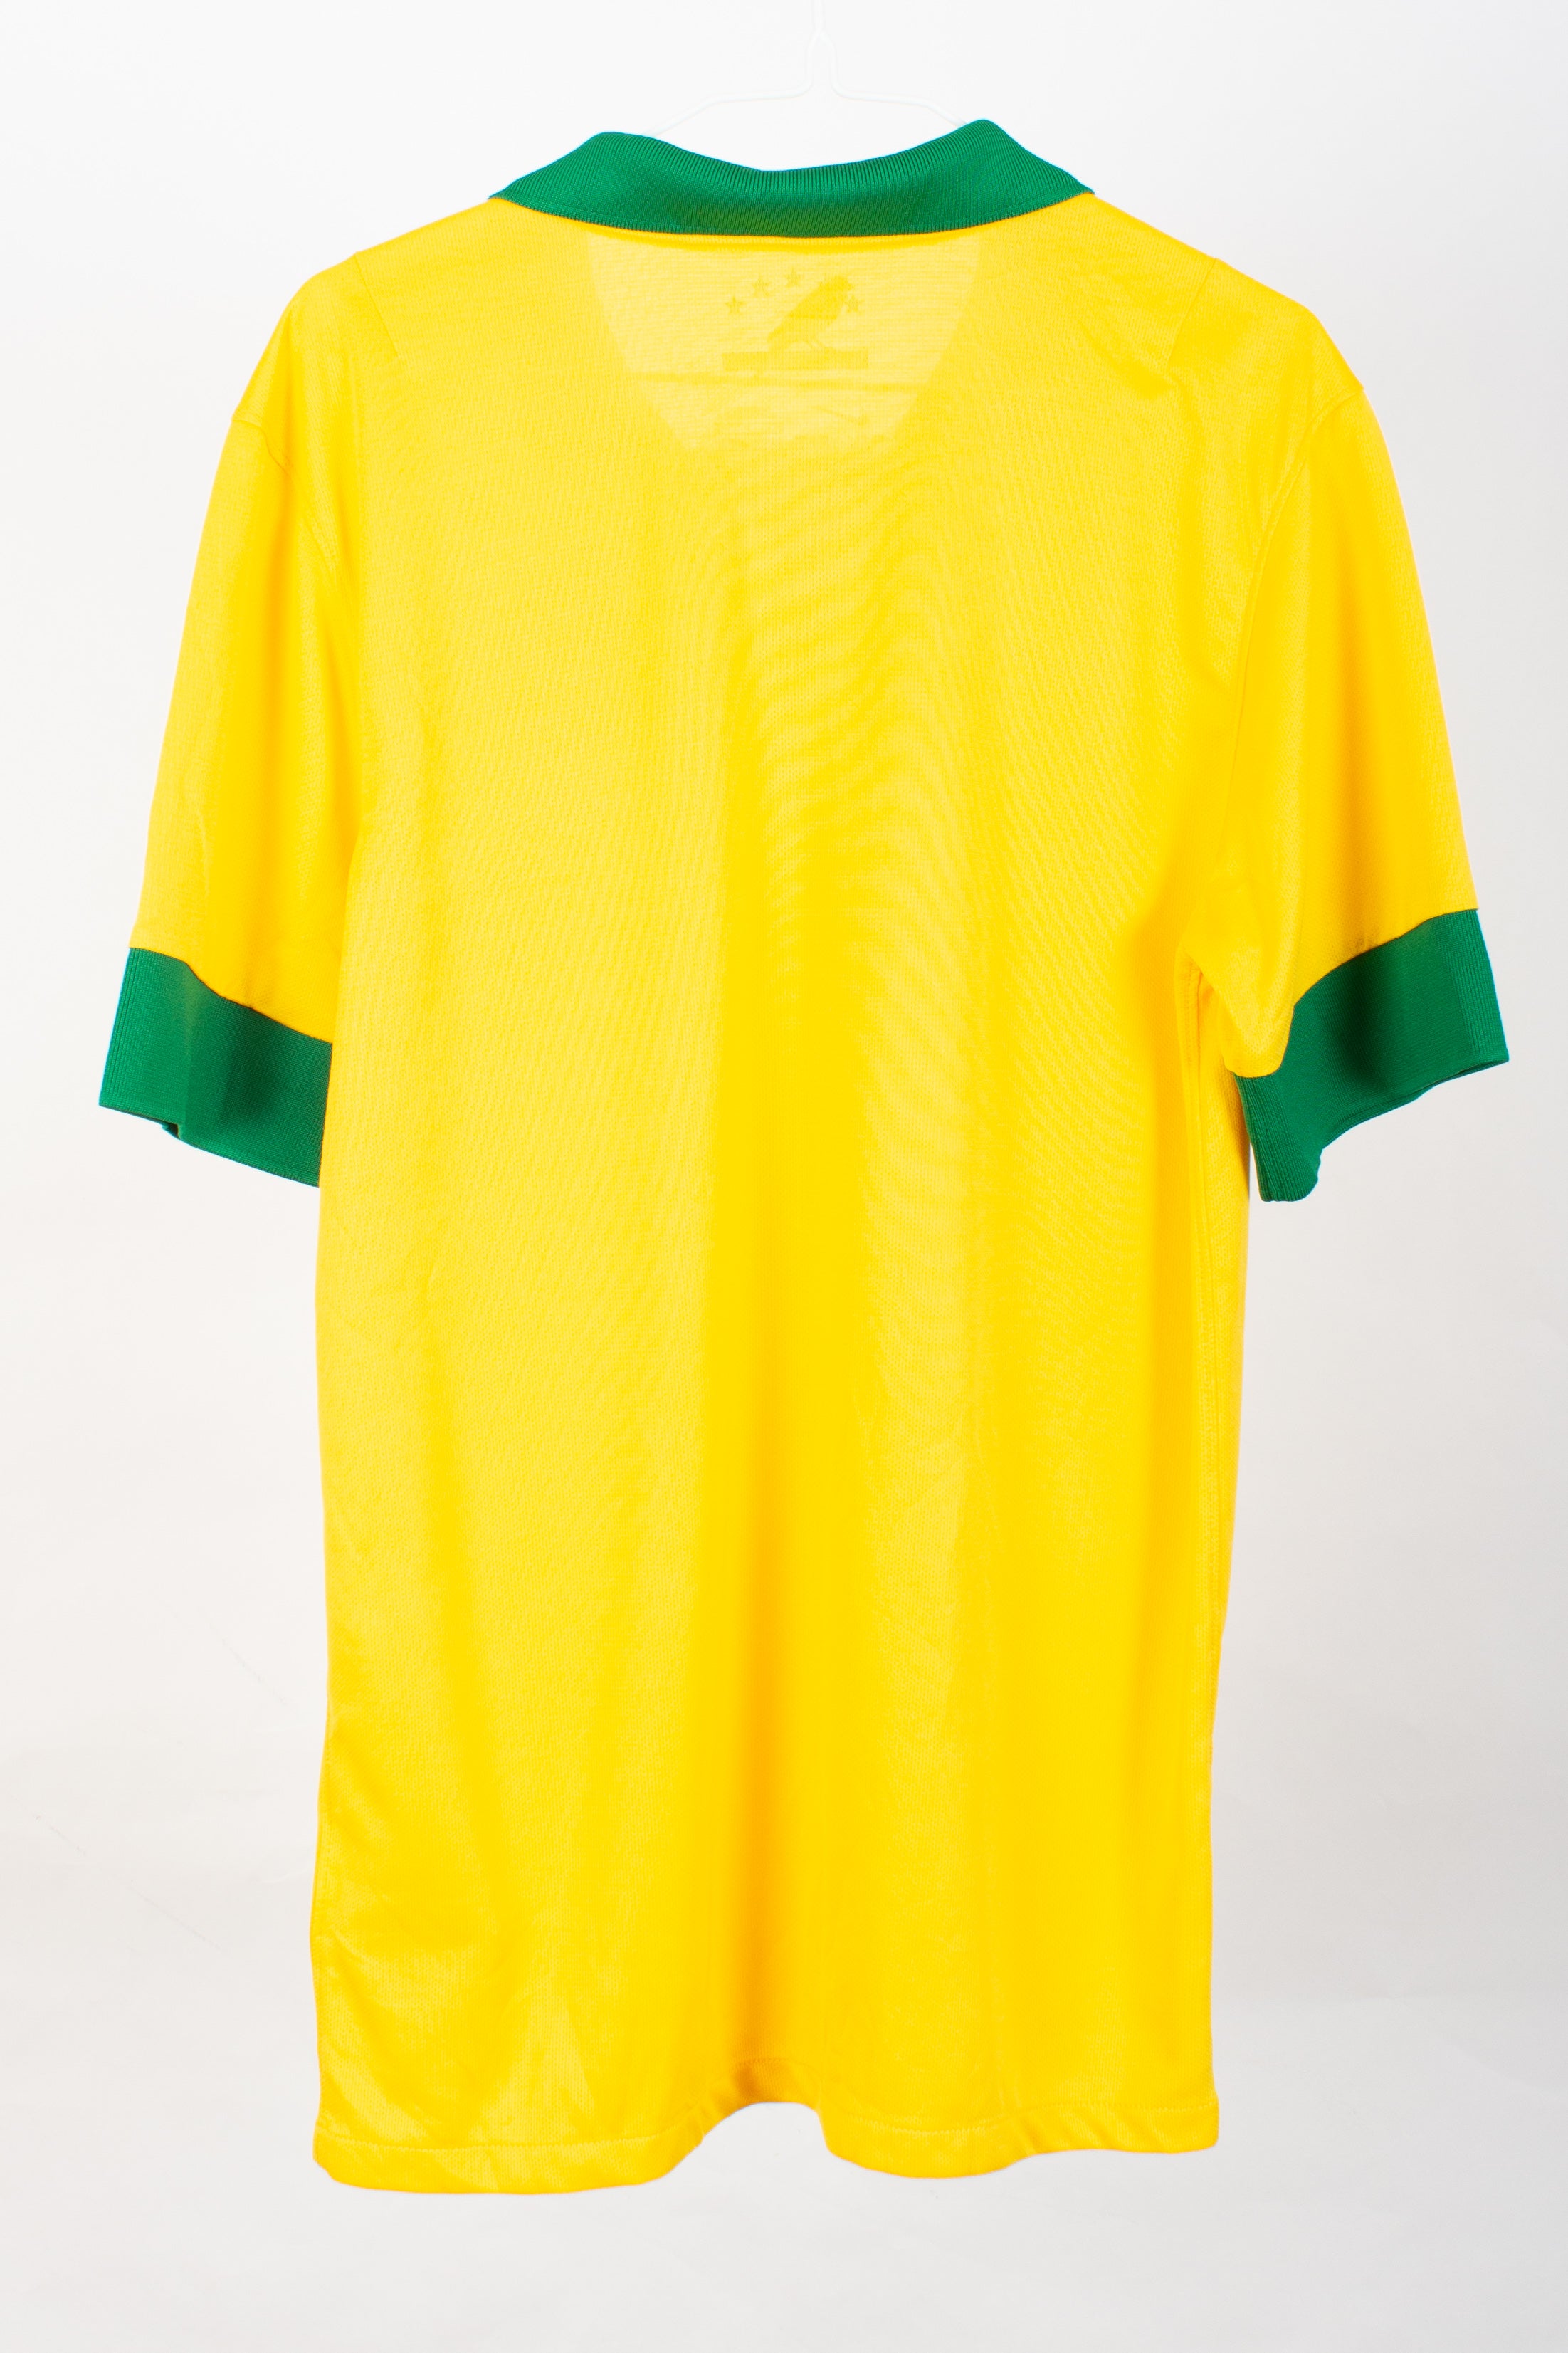 Brazil 2013 Home Shirt (S)